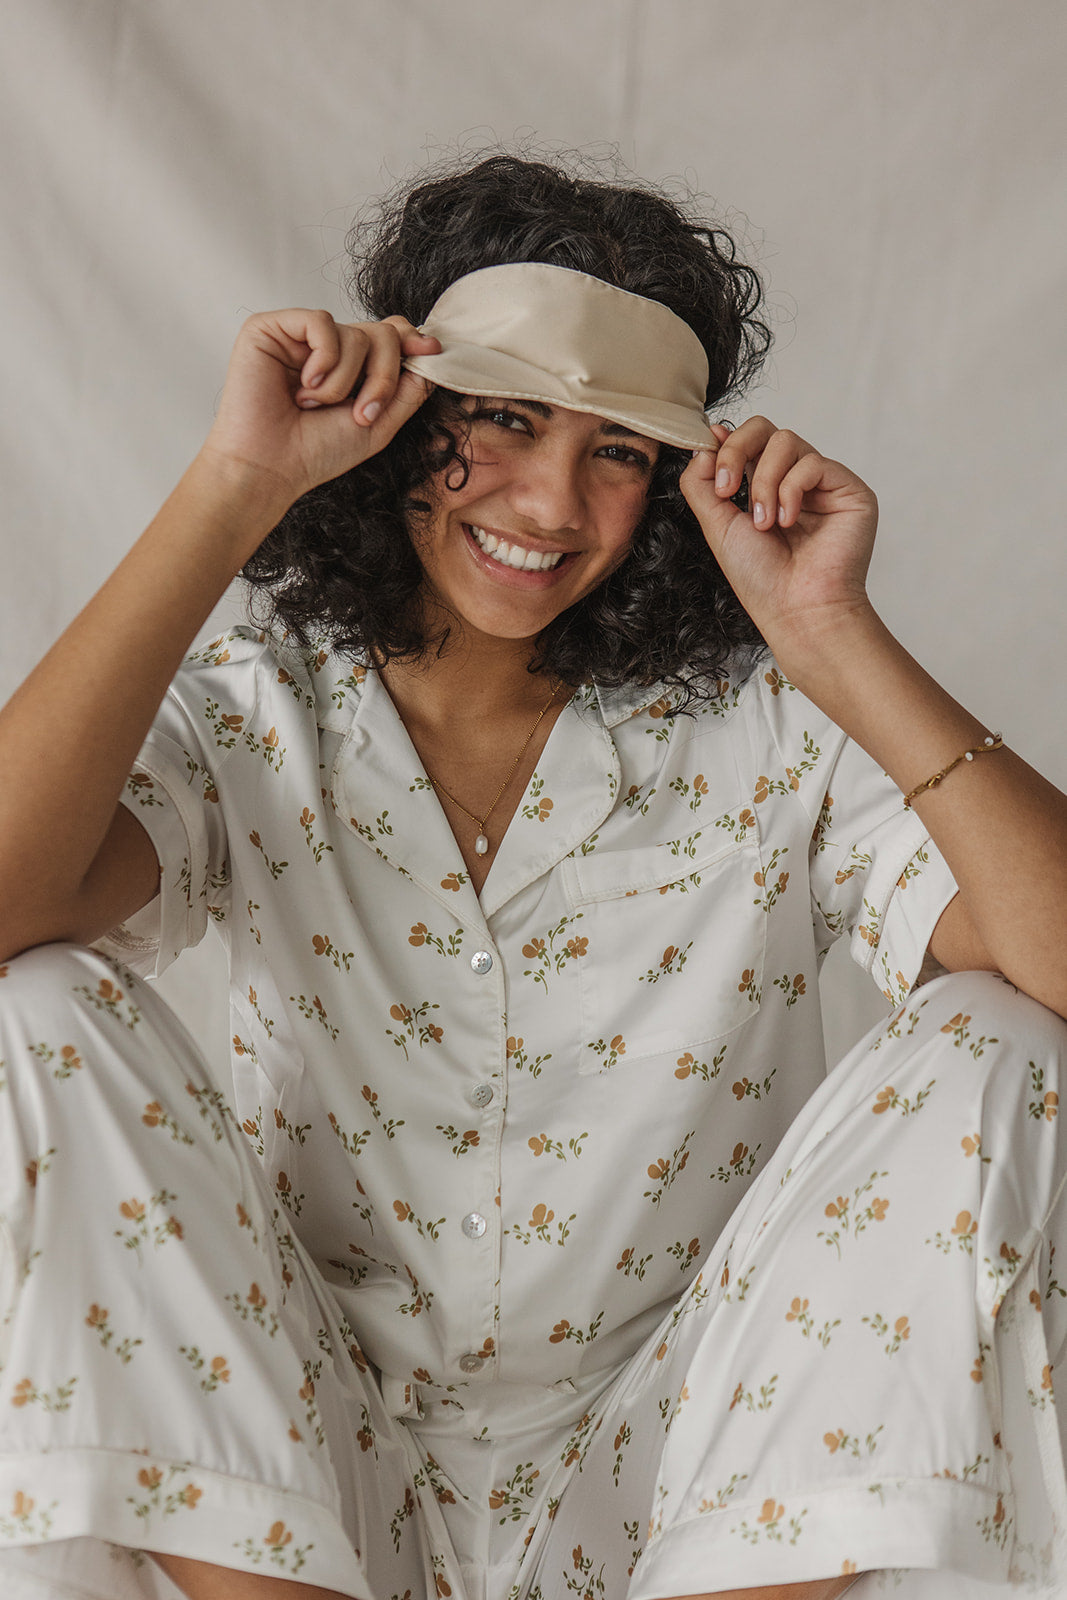 Satin Pajama Set | Dainty Floral Short Sleeve